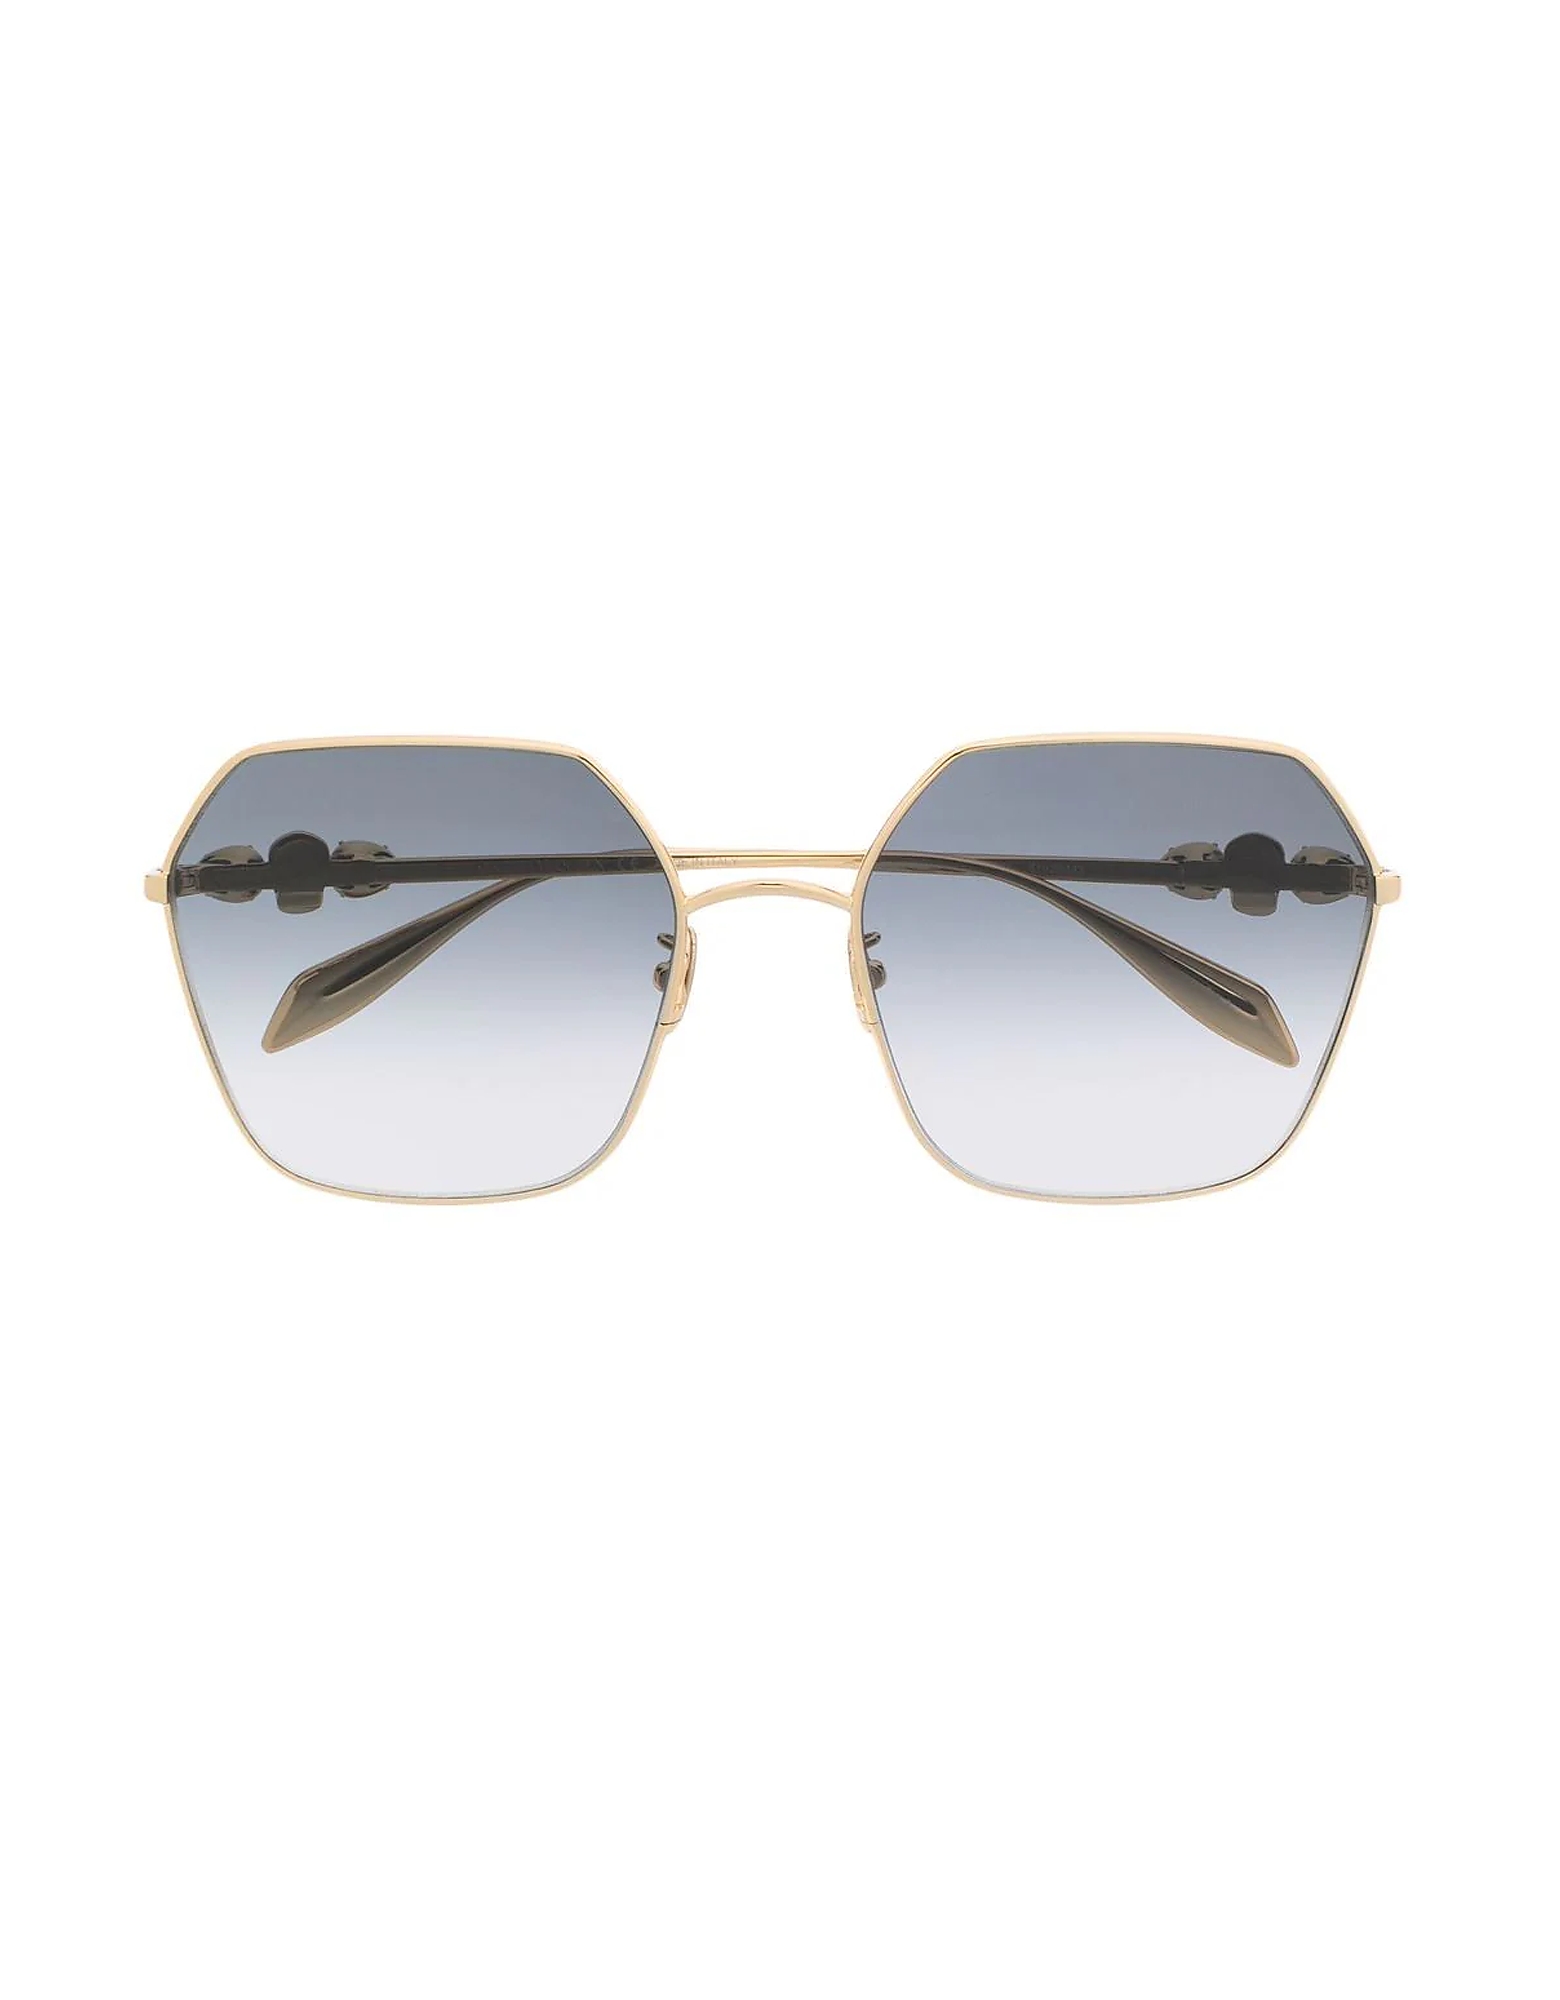 Alexander McQueen Sunglasses AM0325S Gold Metal Hexagonal-frame Women's Sunglasses